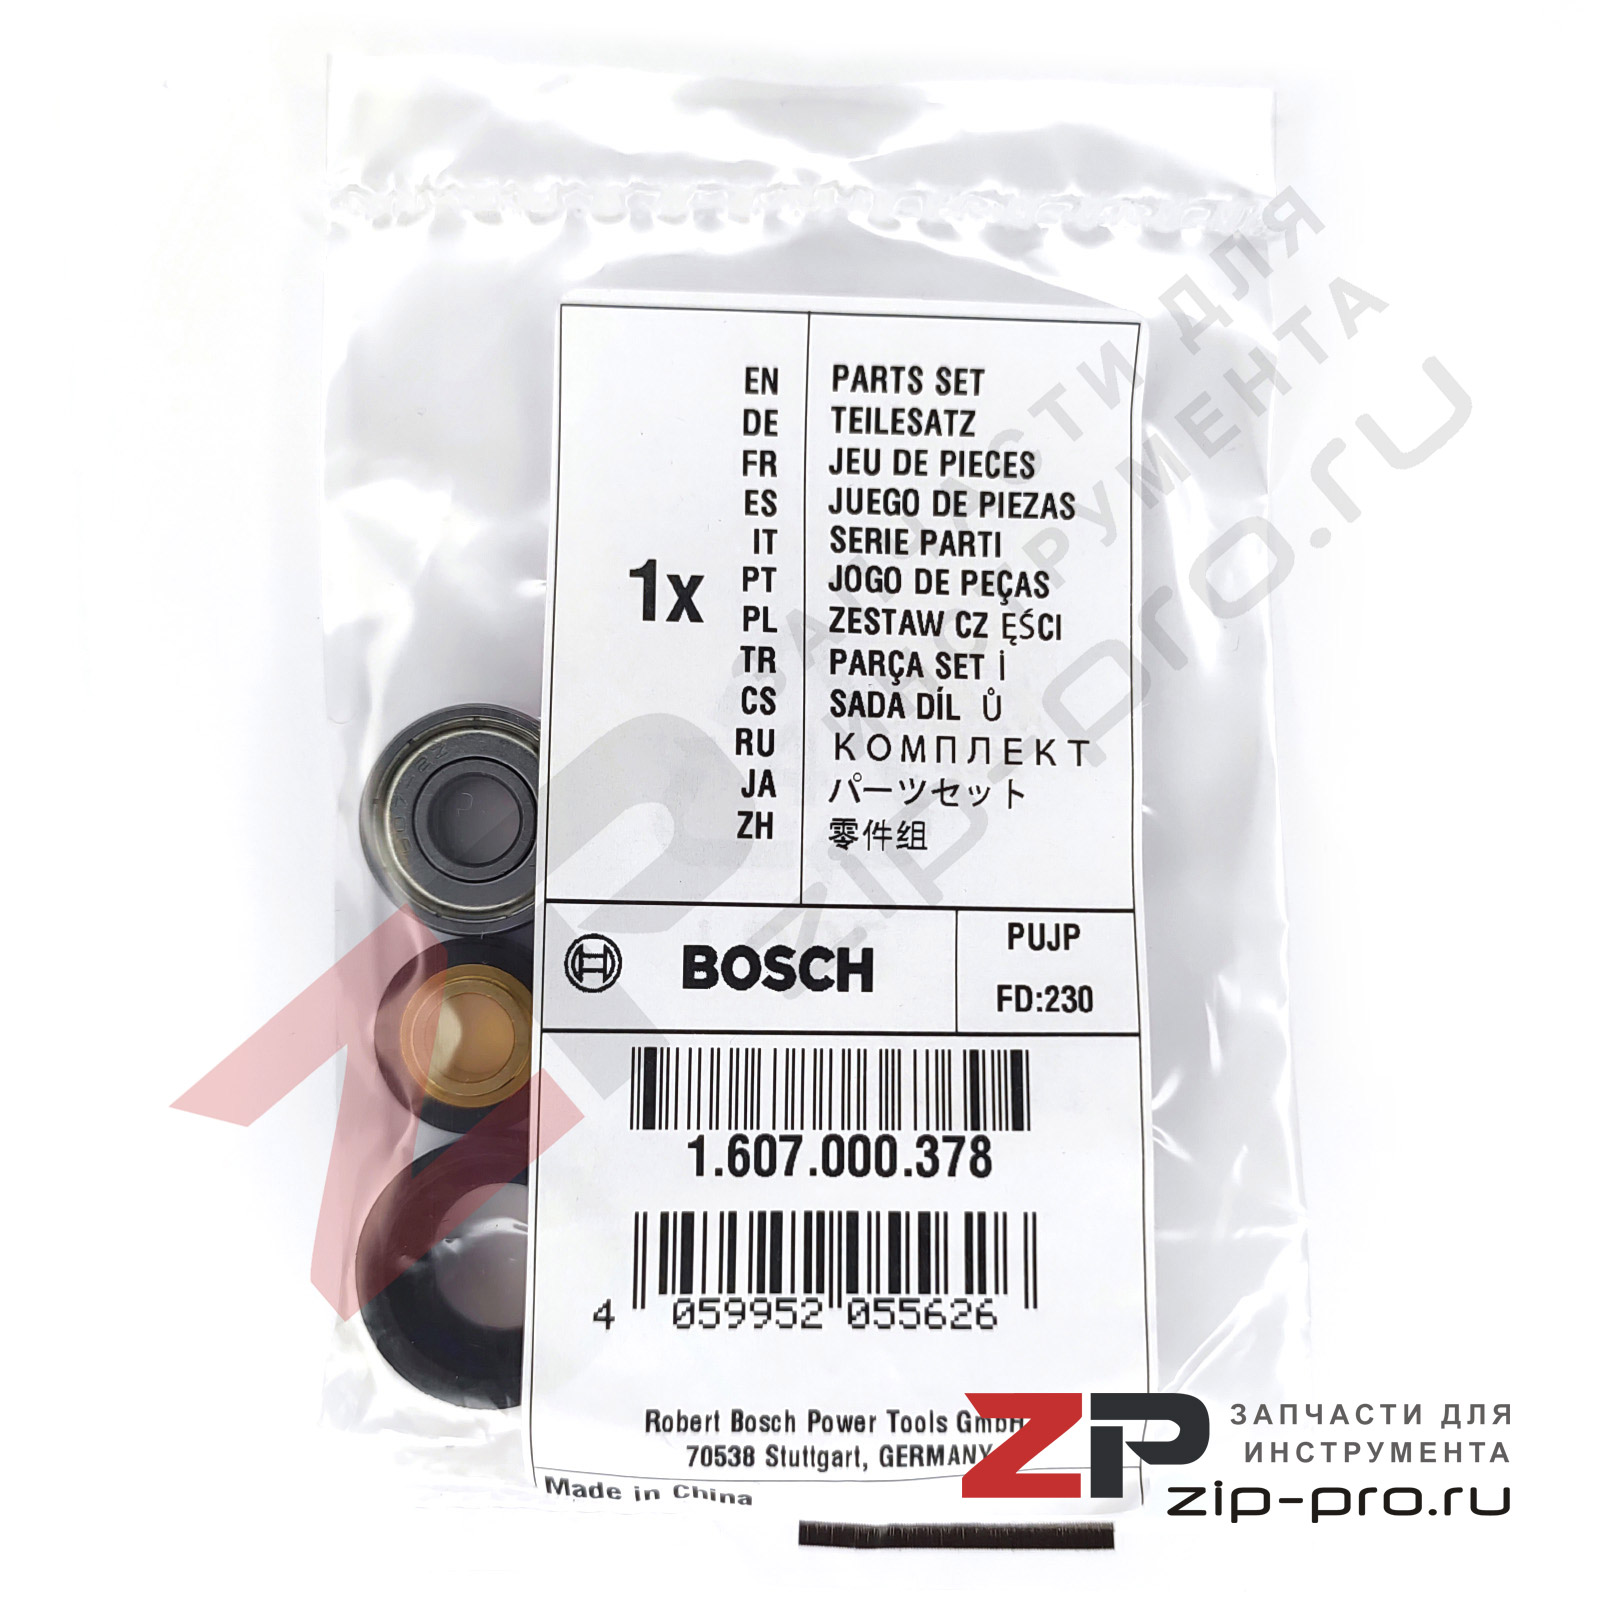 Ремкомплект 1607000378 для УШМ Bosch фото 2